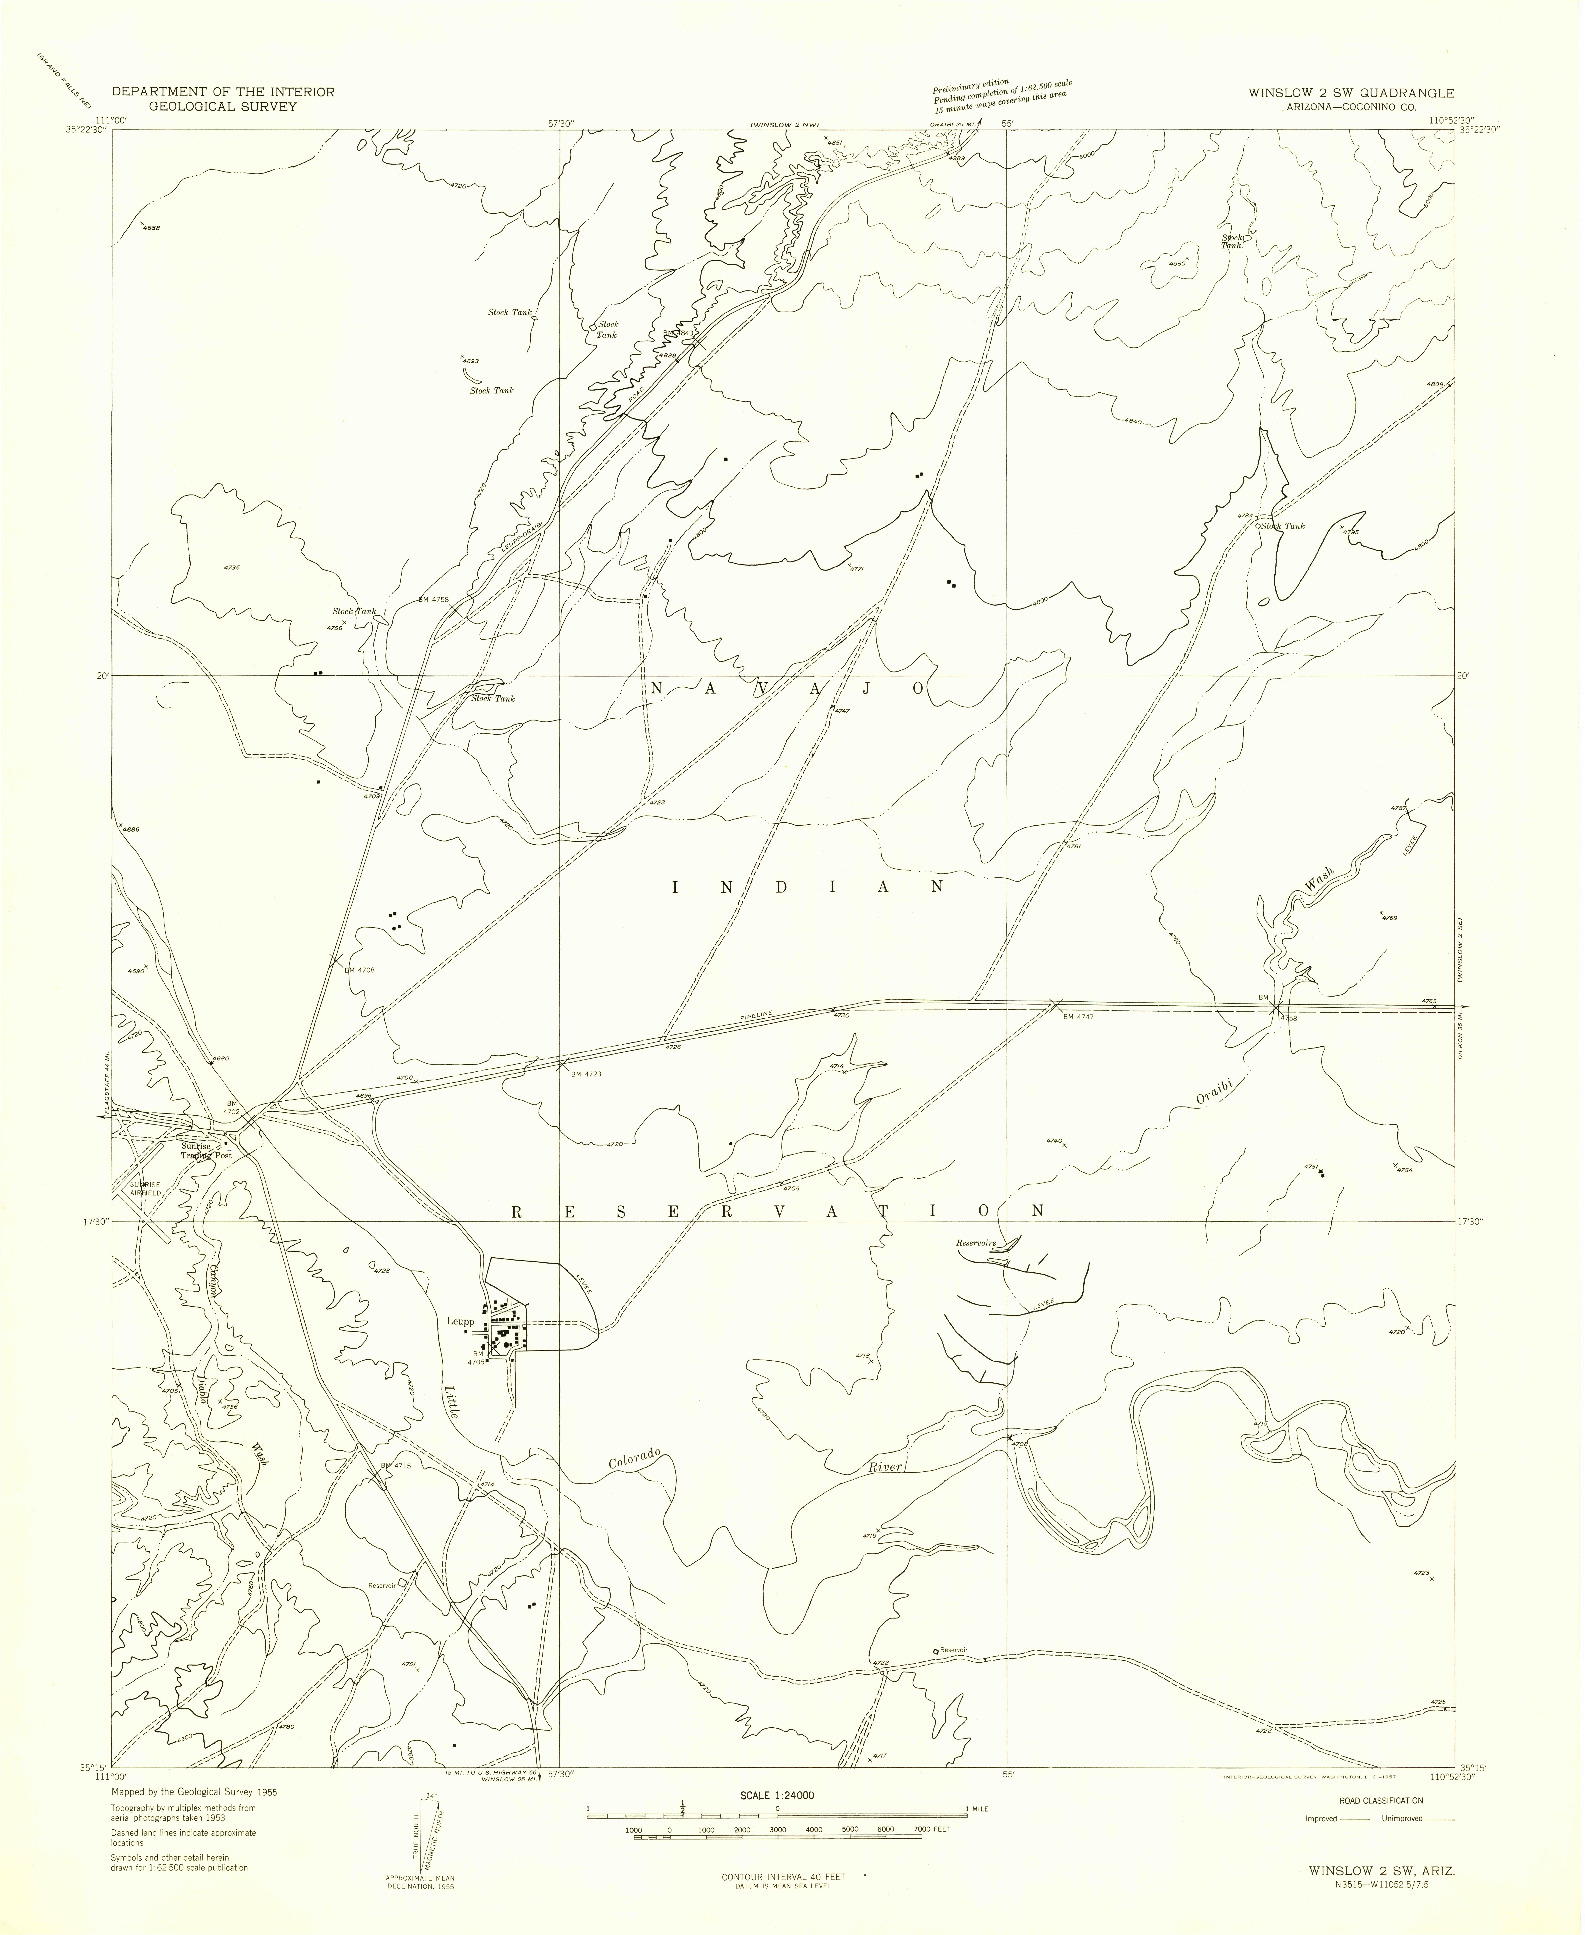 USGS 1:24000-SCALE QUADRANGLE FOR WINSLOW 2 SW, AZ 1955